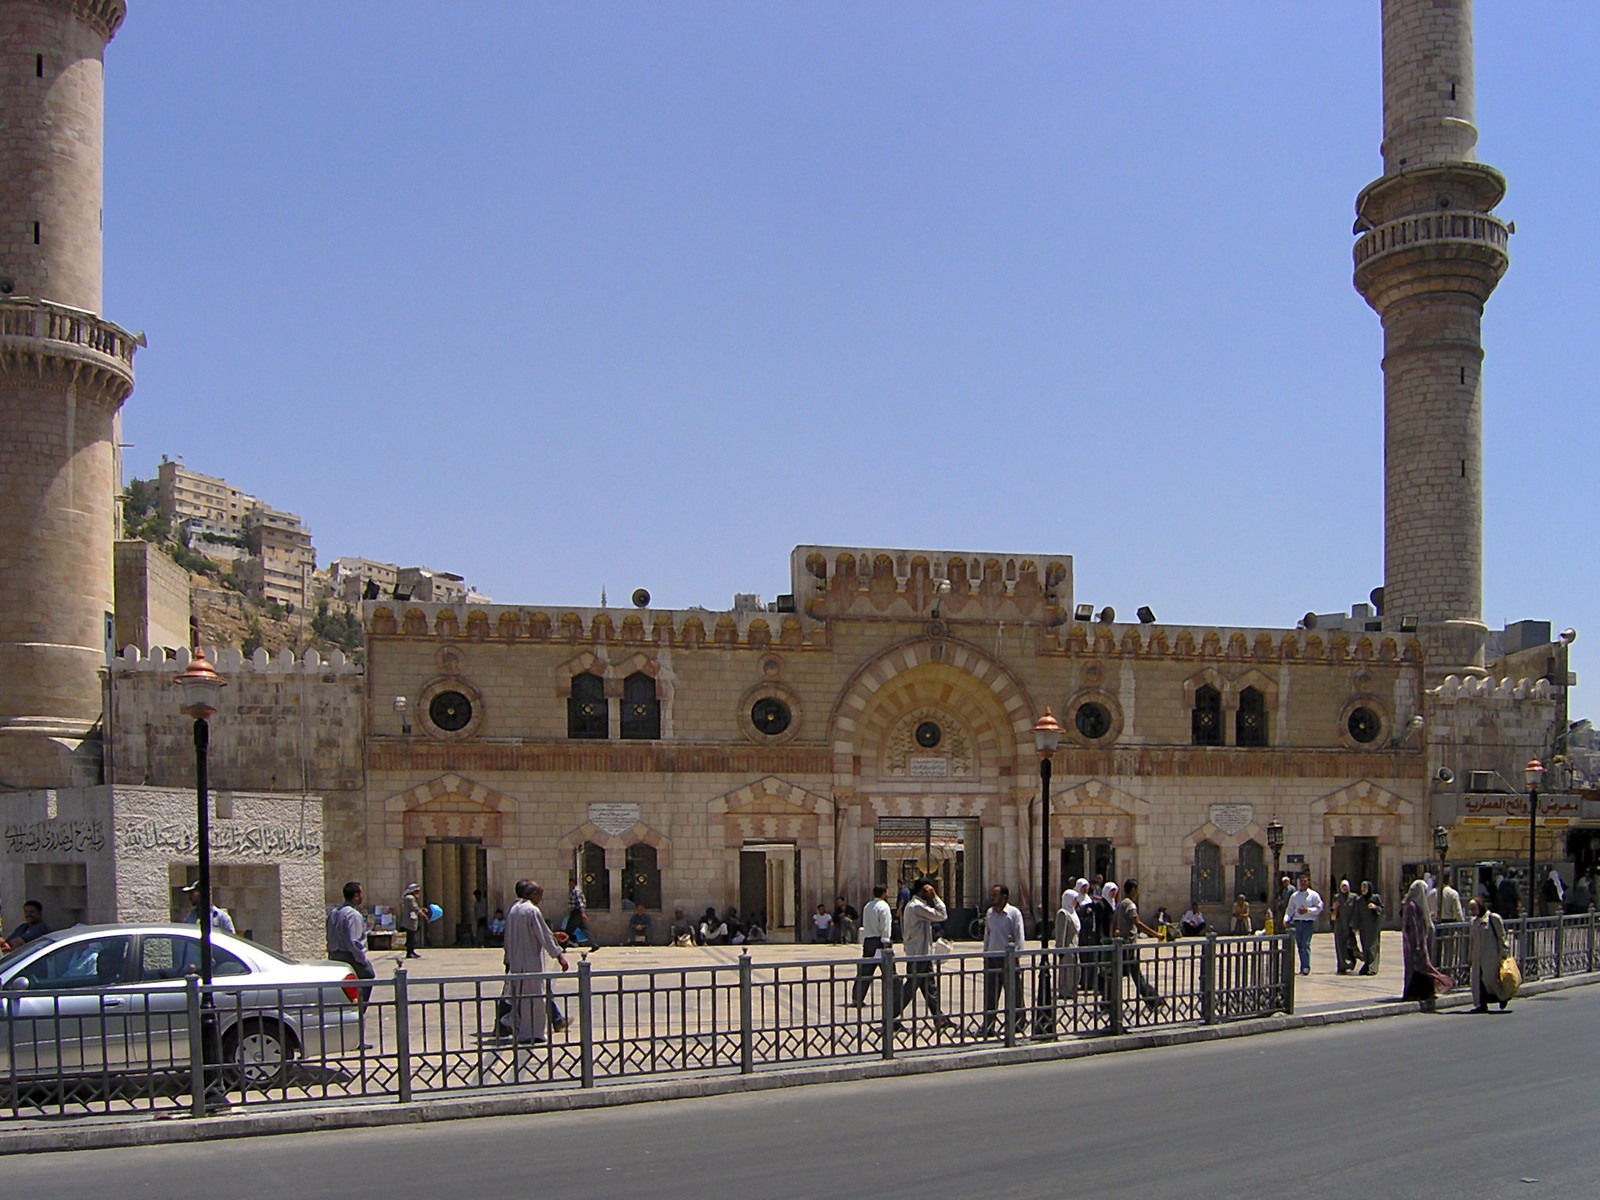 Amman - عمّان